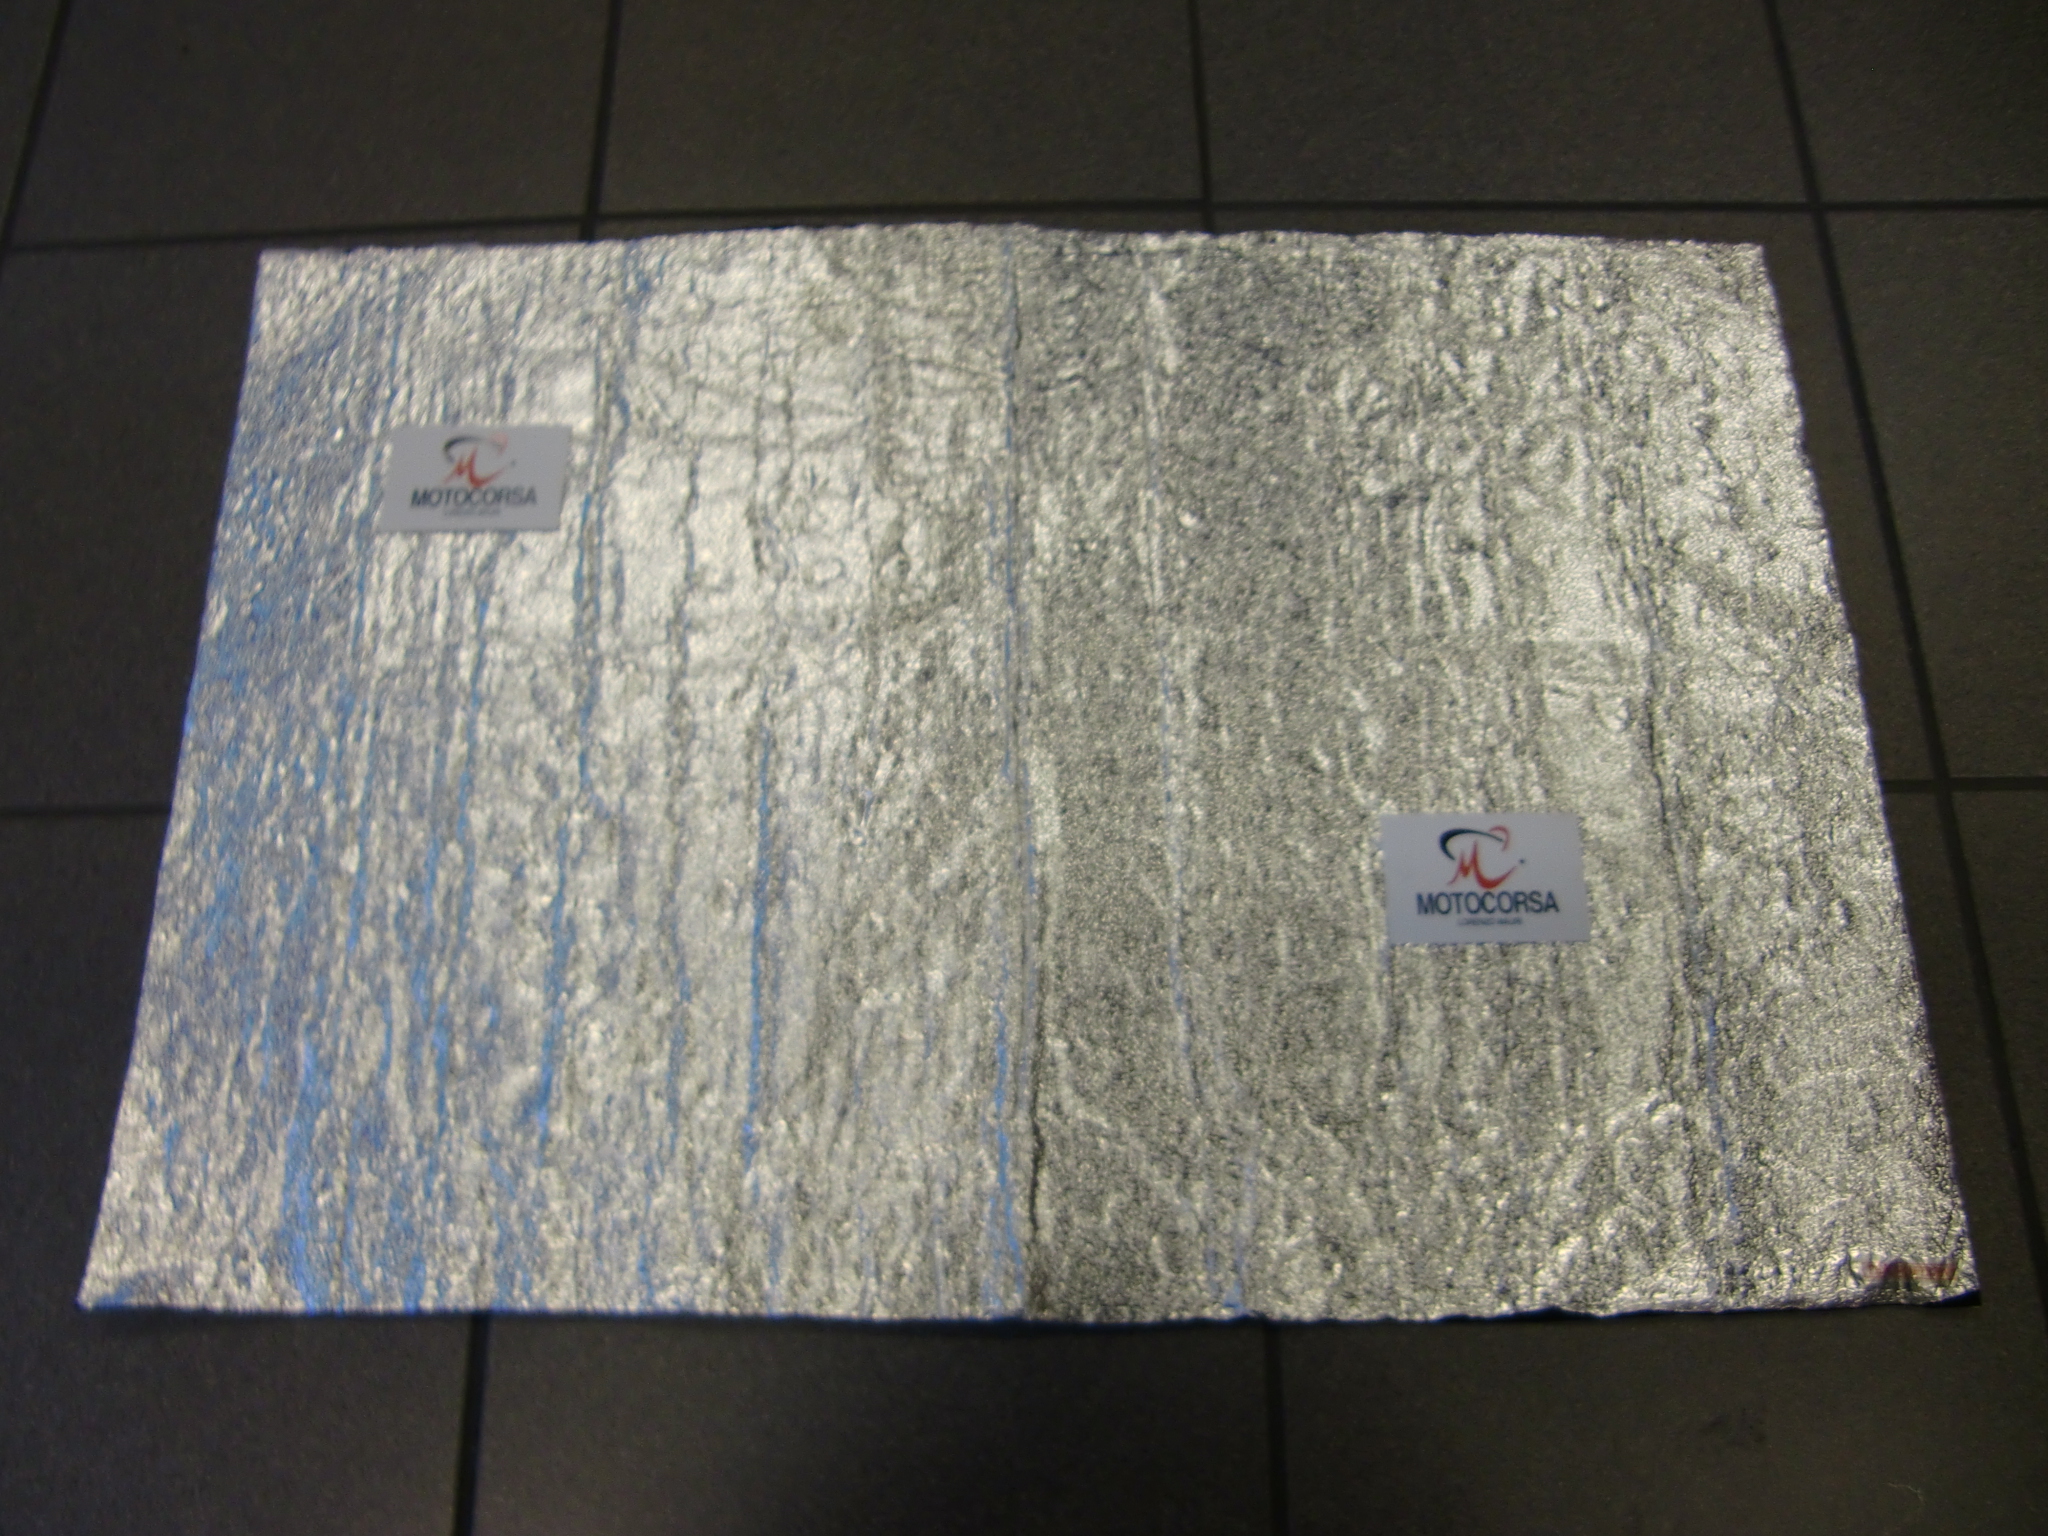 Kit fogli isolante termico adesivo (550° C) 300 x 450 mm spessori